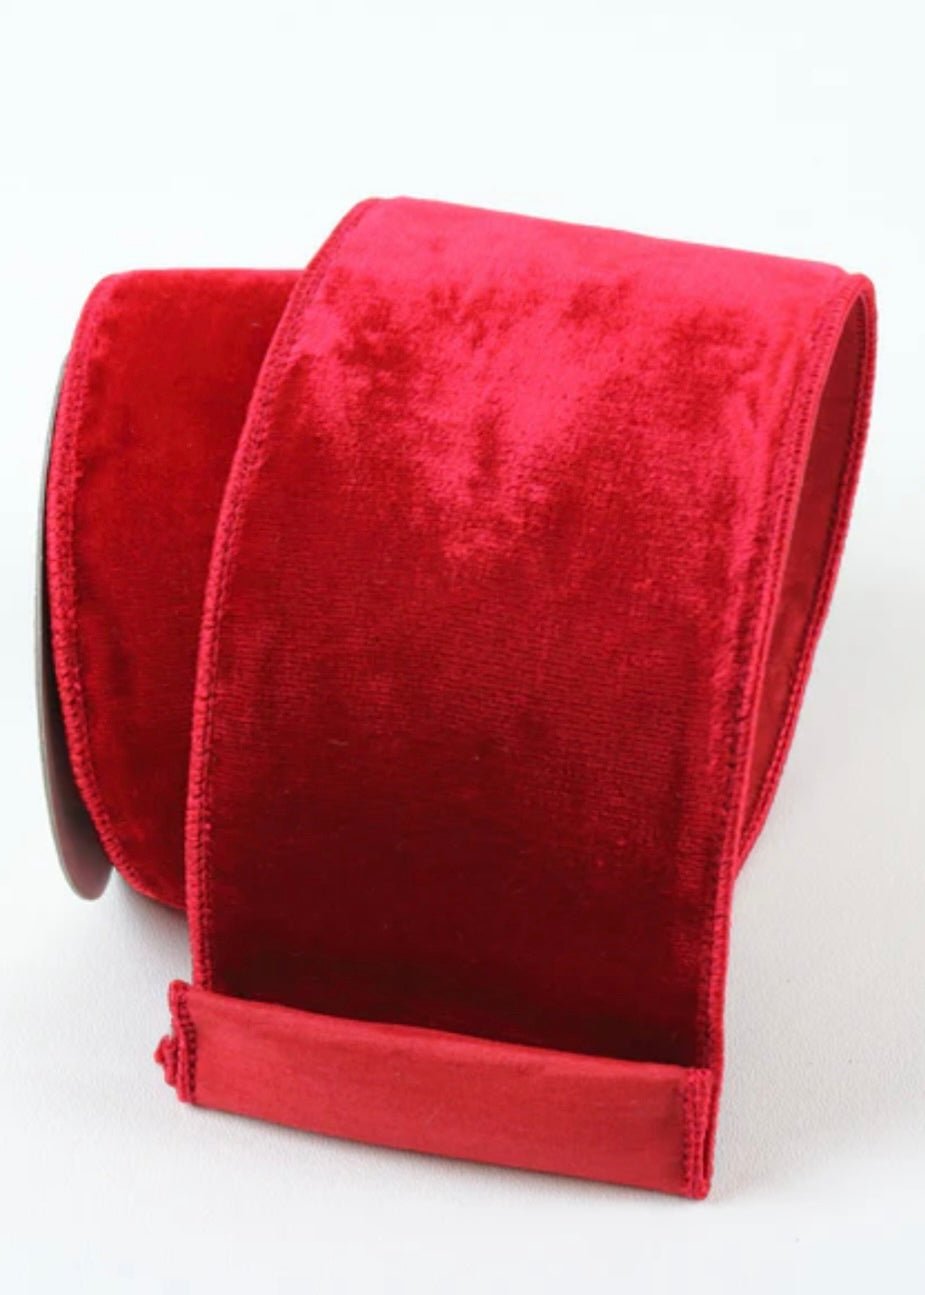 Red velvet 4” farrisilk wired ribbon - Greenery MarketRibbons & TrimRG804-02